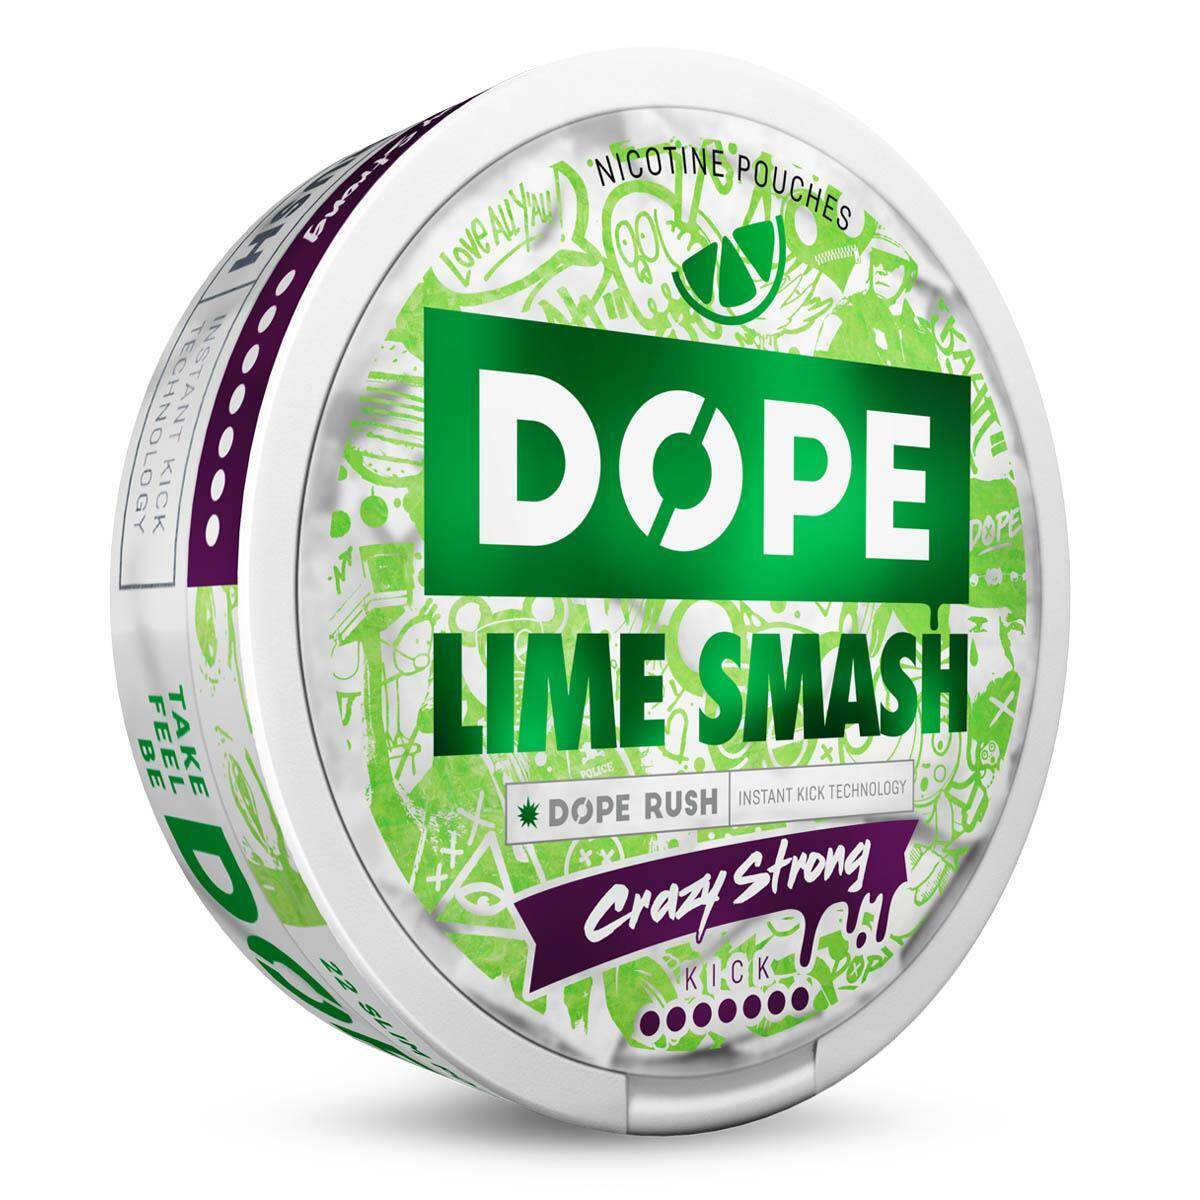 SNUS - Saszetki nikotynowe DOPE - Lime Smash 28,5mg/g (Zdjęcie 3)